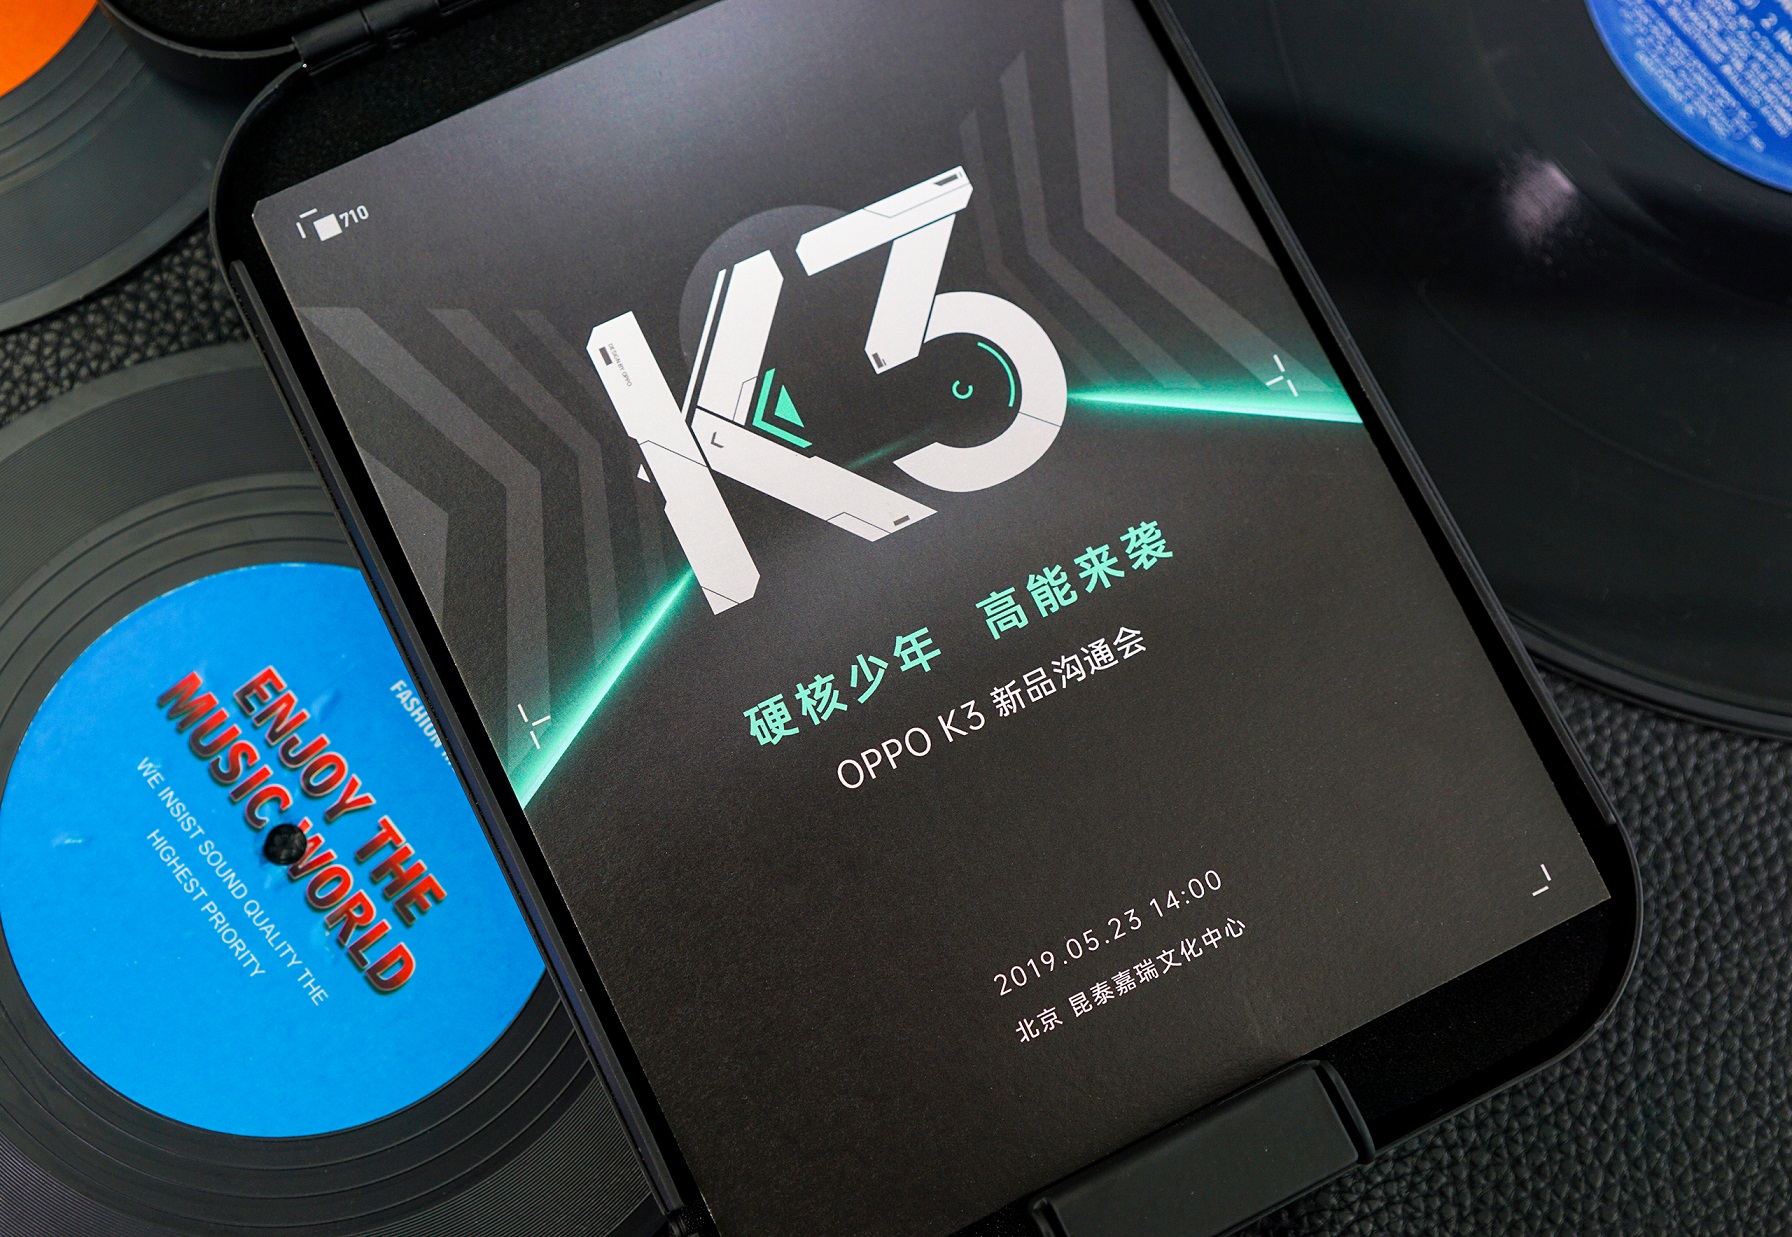  OPPO K3手机新品沟通会将于5月23日下午2点在北京召开(9)